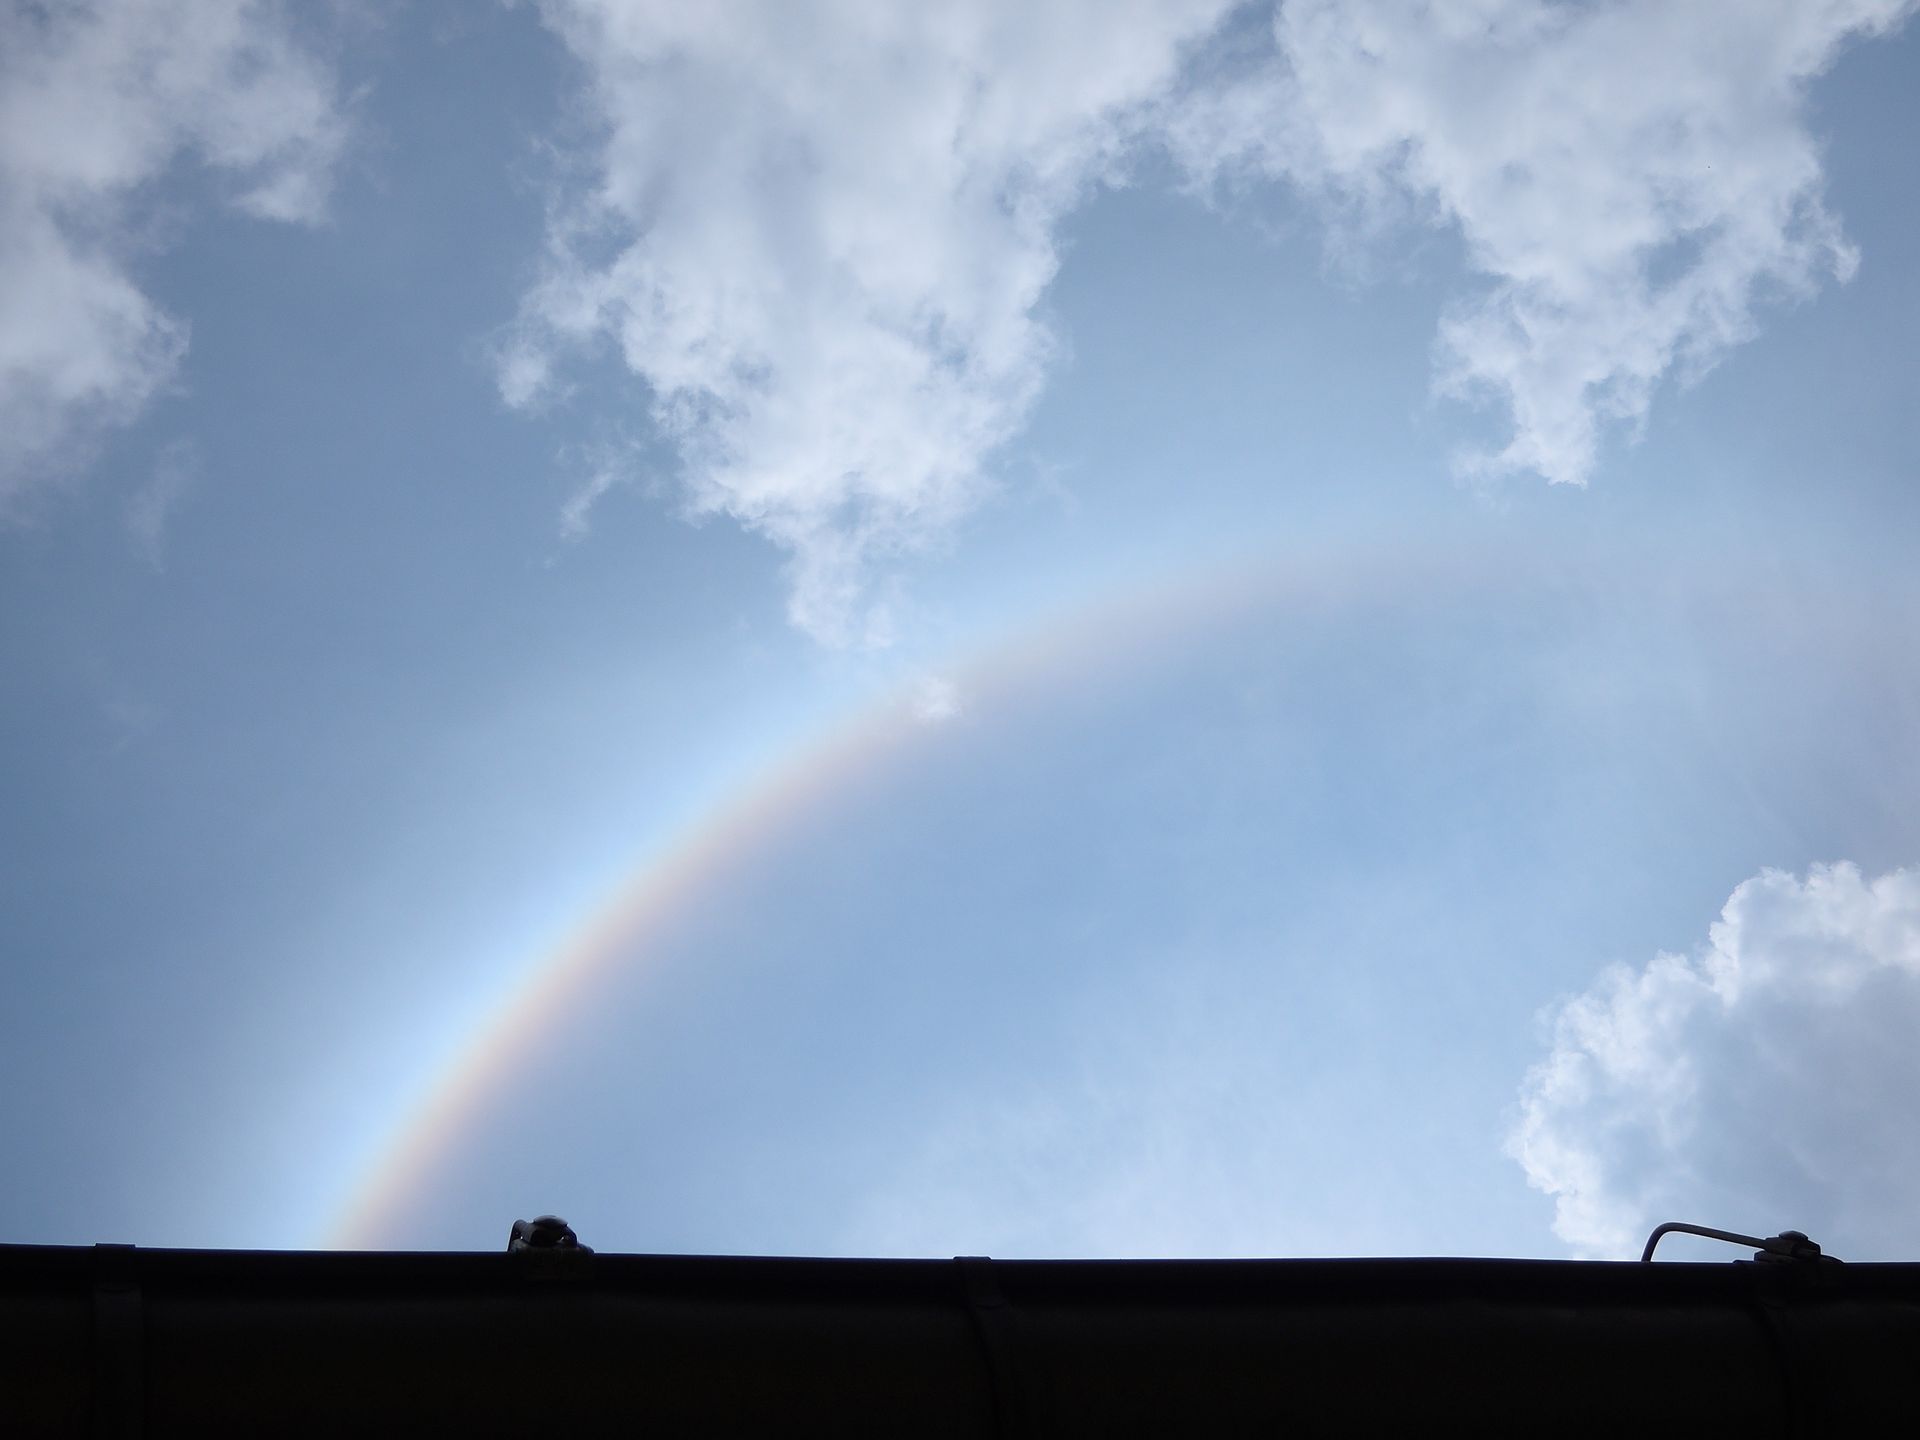 Regenbogen am Himmel mit Wolken über einem Dach